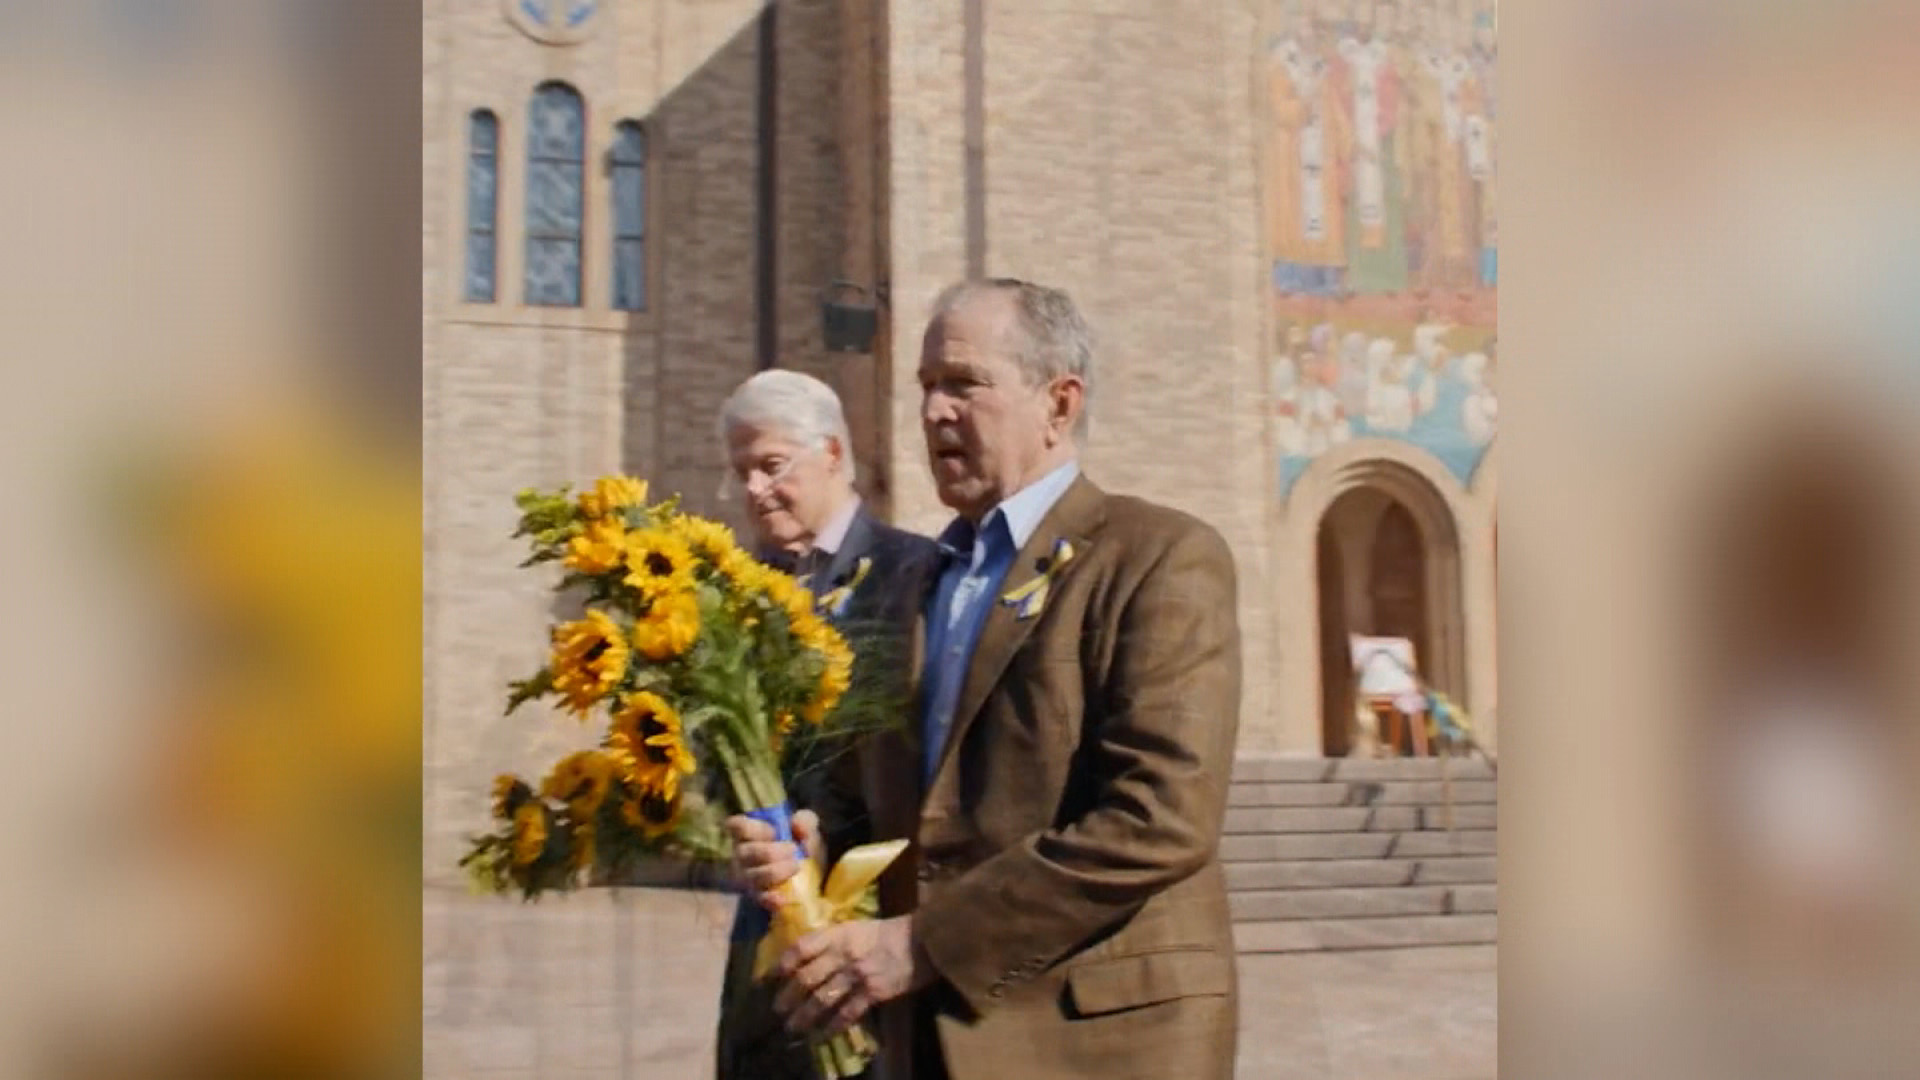 克林顿和小布什系黄蓝丝带 访乌克兰教堂展现支持